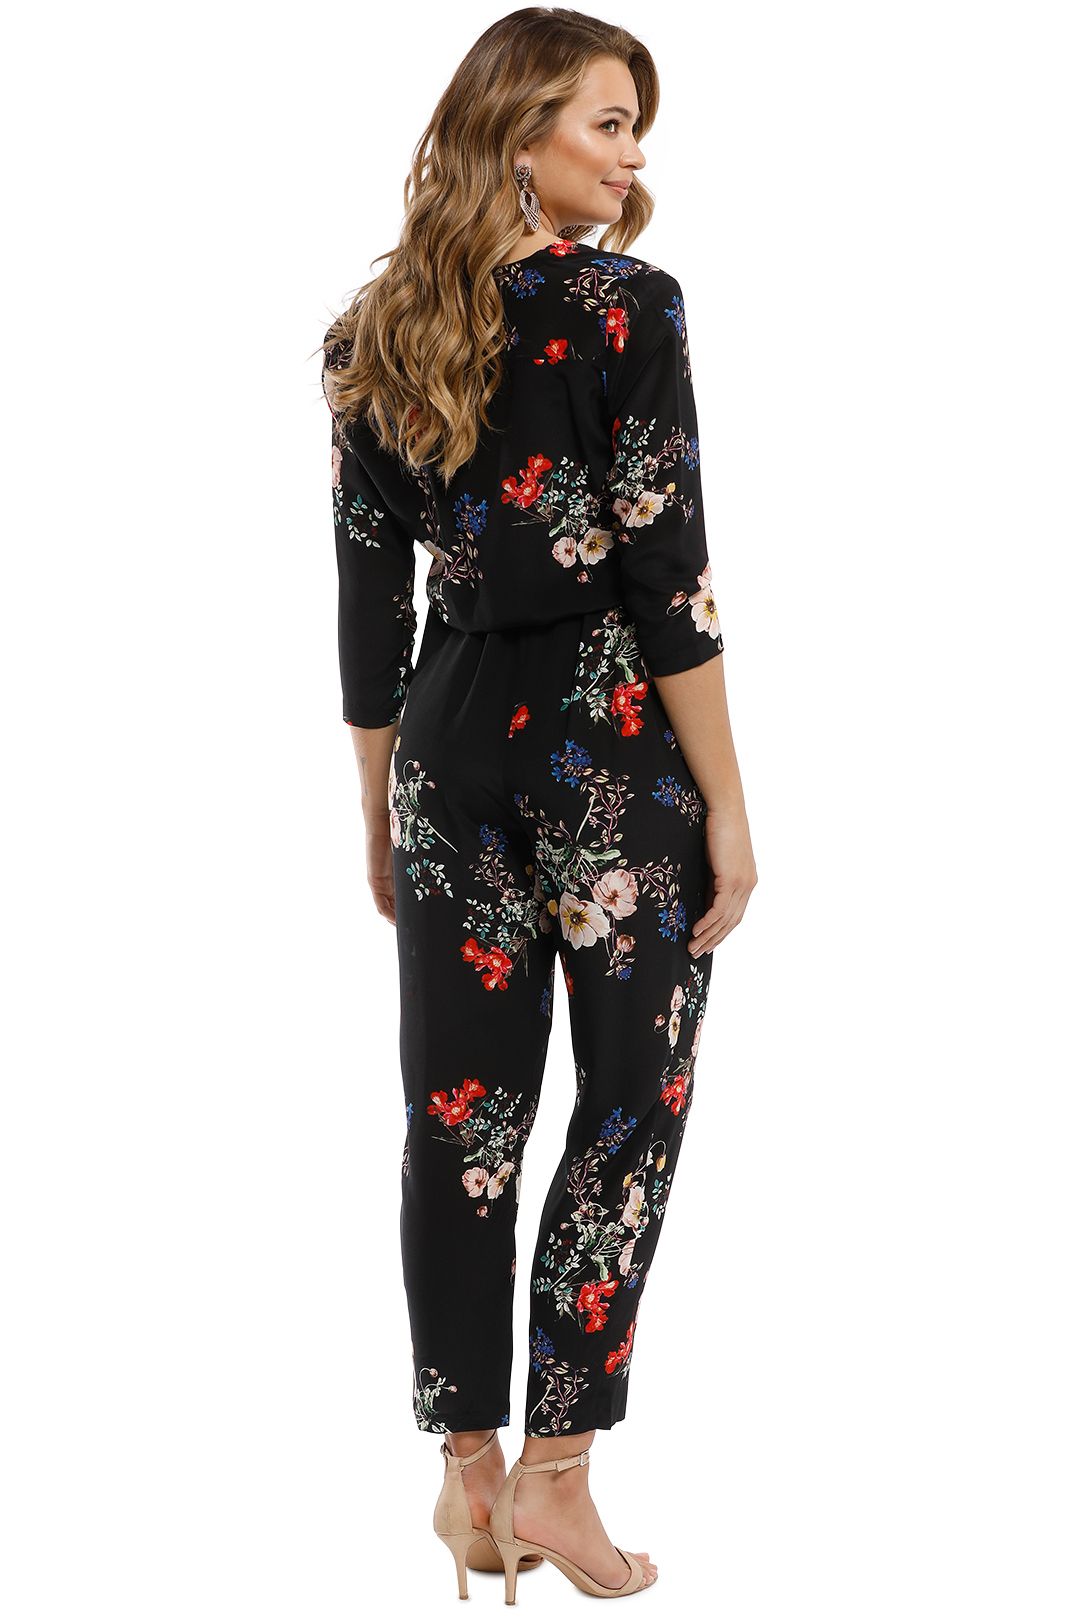 Nicholas - Cecile Floral Jumpsuit - Black Multi - Back